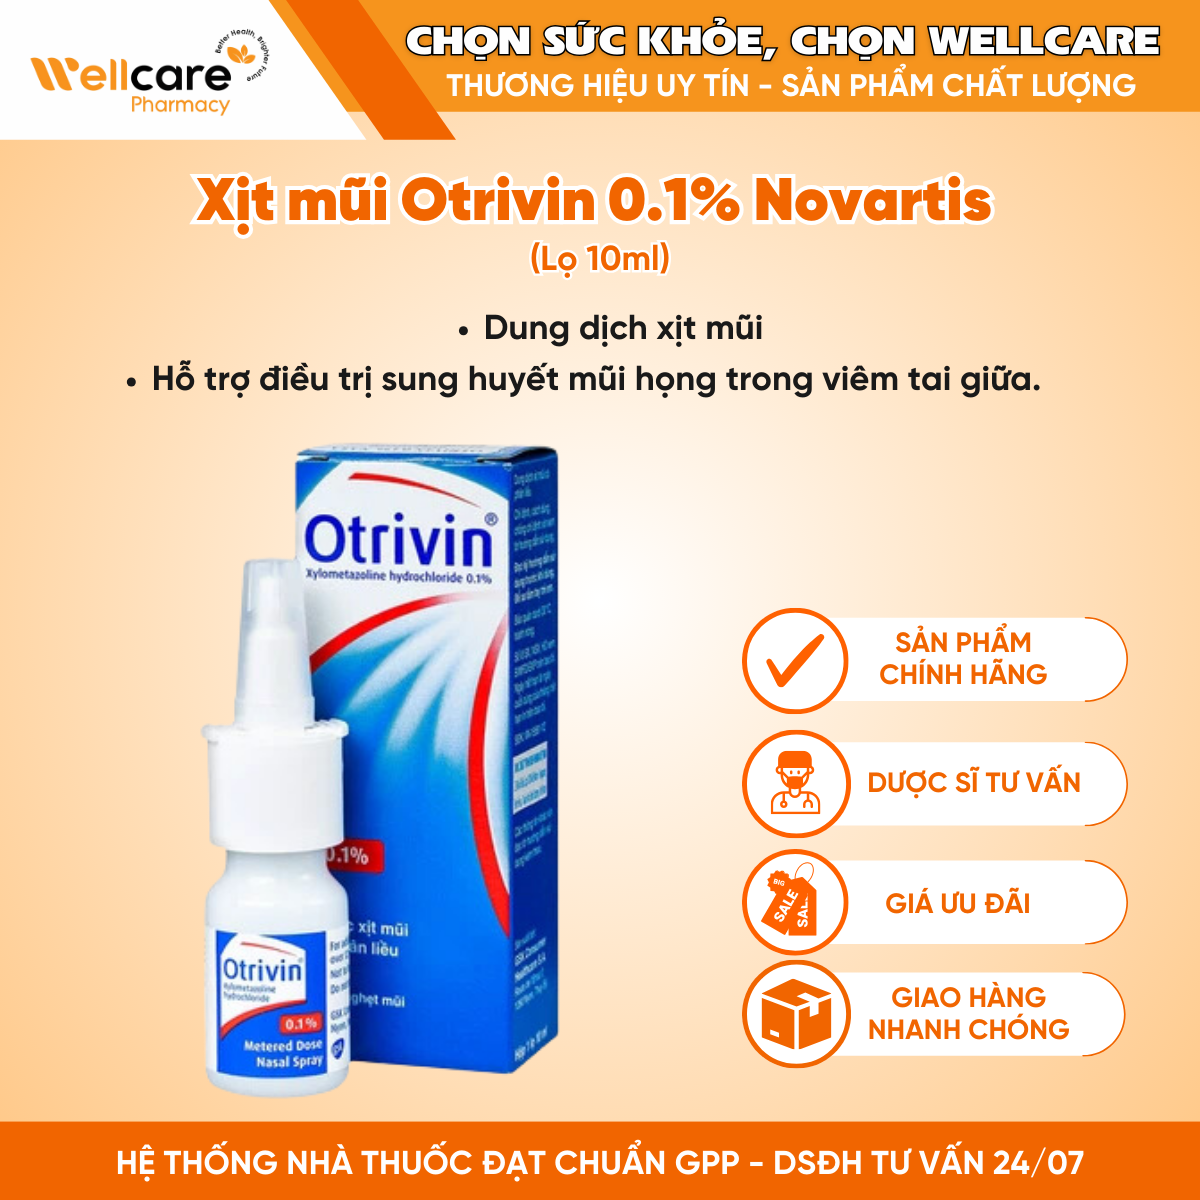 Xịt mũi Otrivin 0.1% Novartis – Điều trị nghẹt mũi, sung huyết mũi (Lọ 10ml)